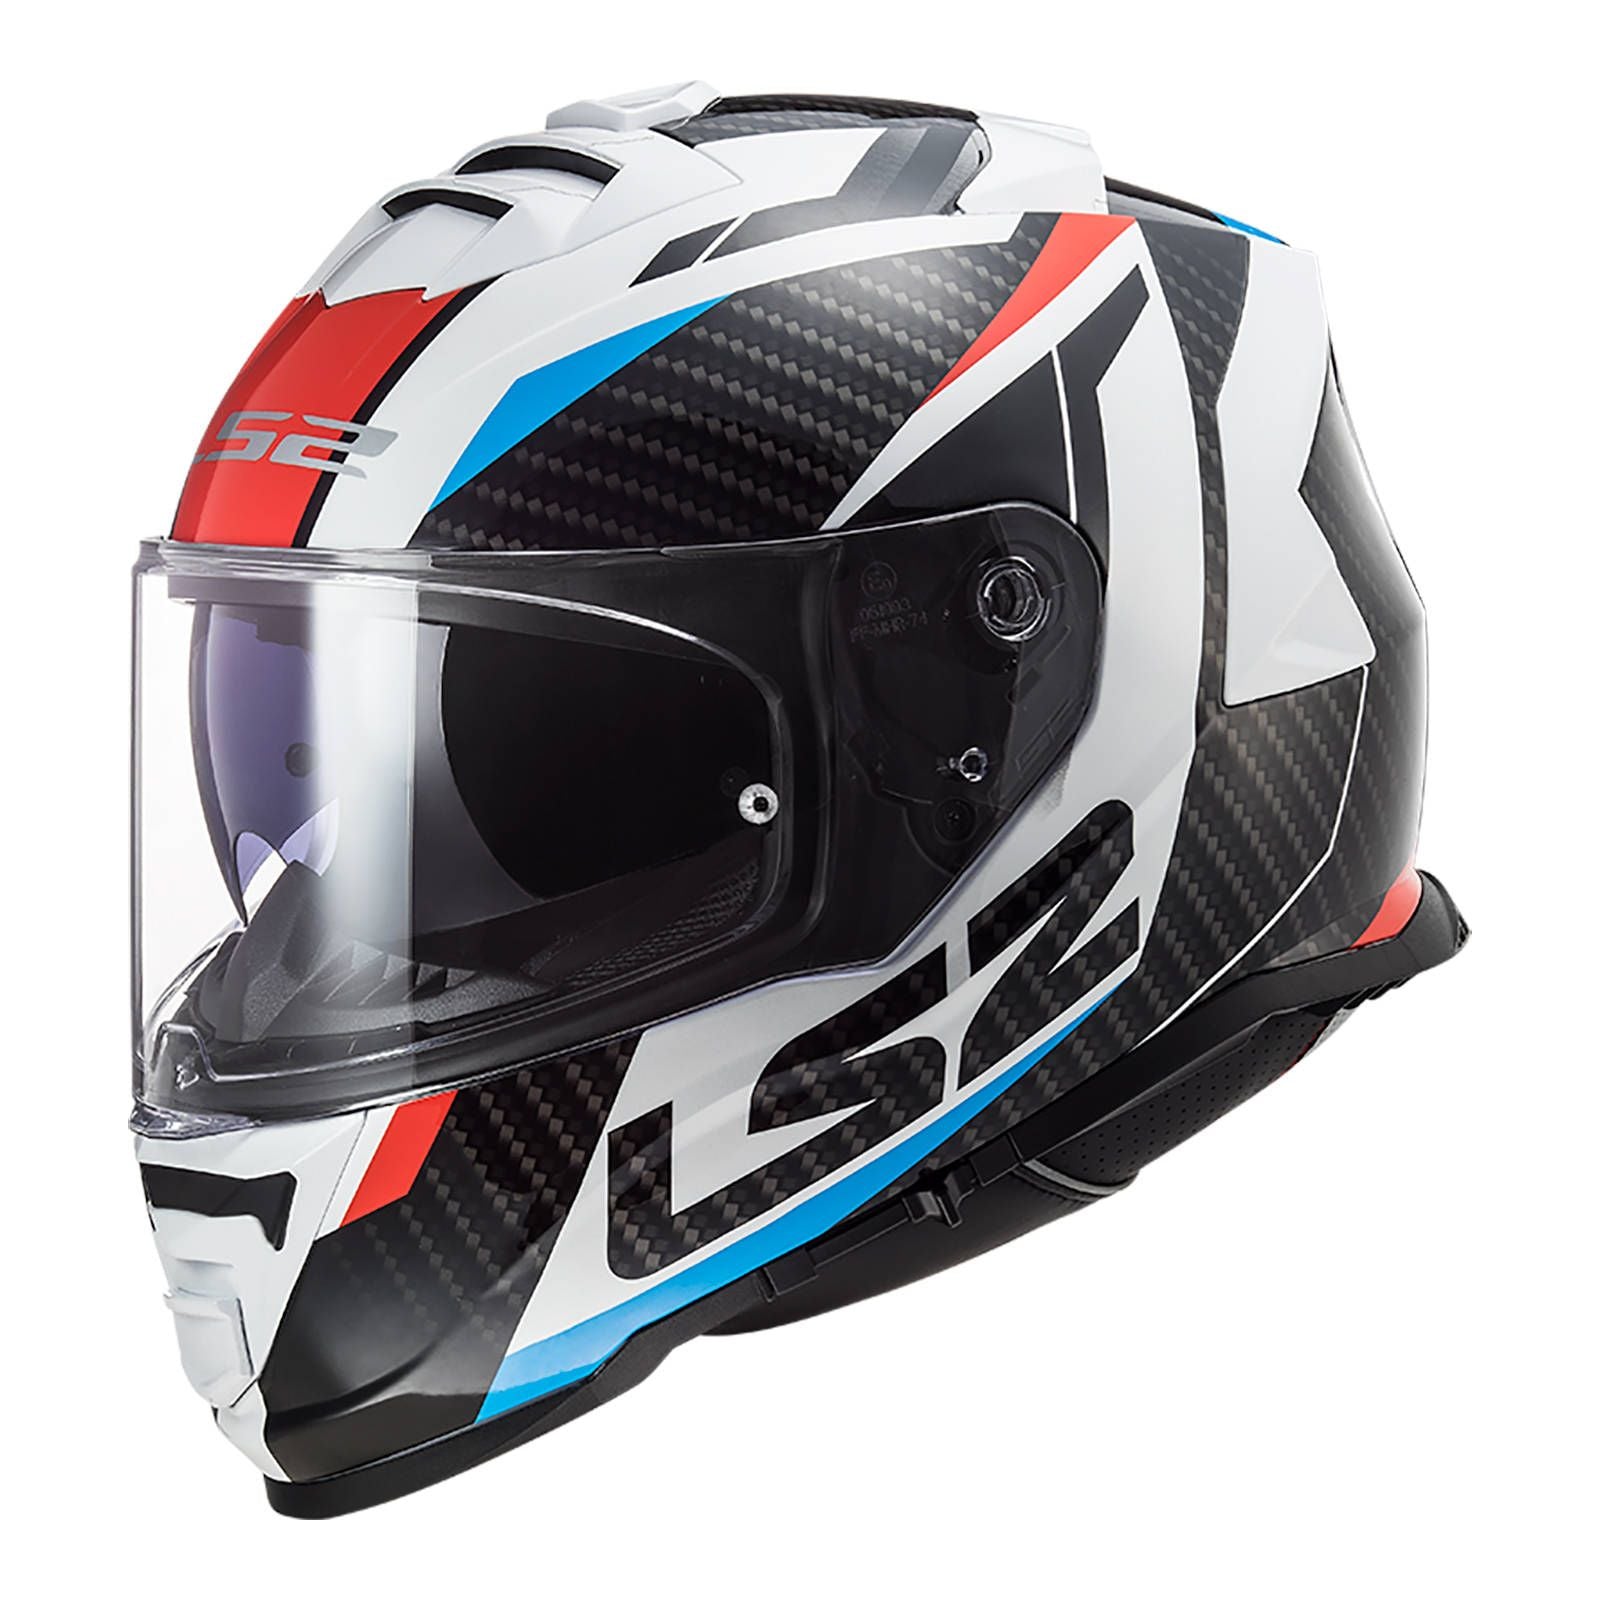 New LS2 FF800 Storm Racer Helmet - White / Blue / Red (S) #LS2FF800RACWBRS